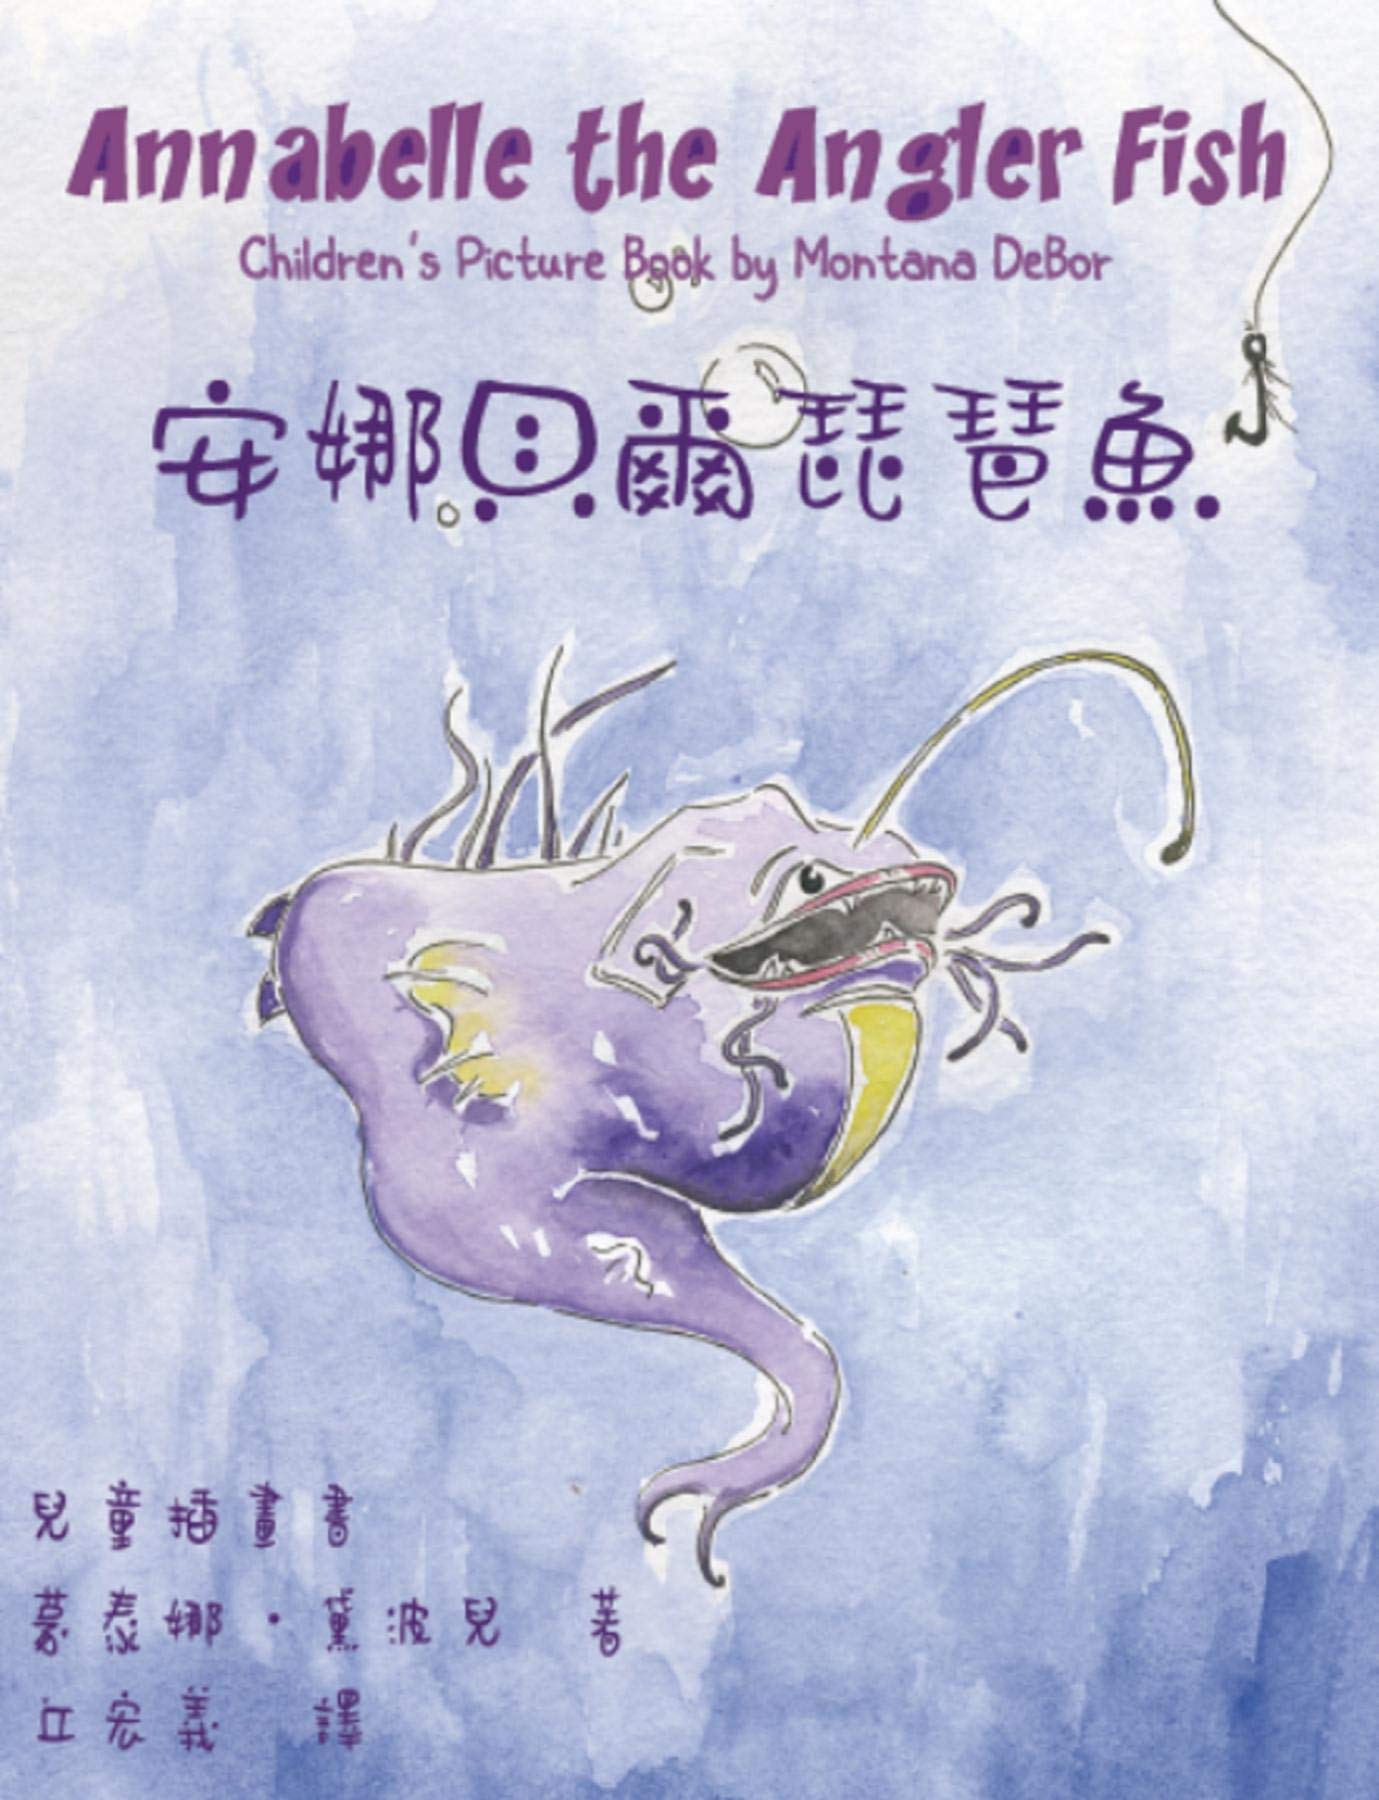 安娜貝爾琵琶魚兒童插畫書: Annabelle the Angler Fish (Bilingual Edition in English and Chinese) (Chinese Edition)